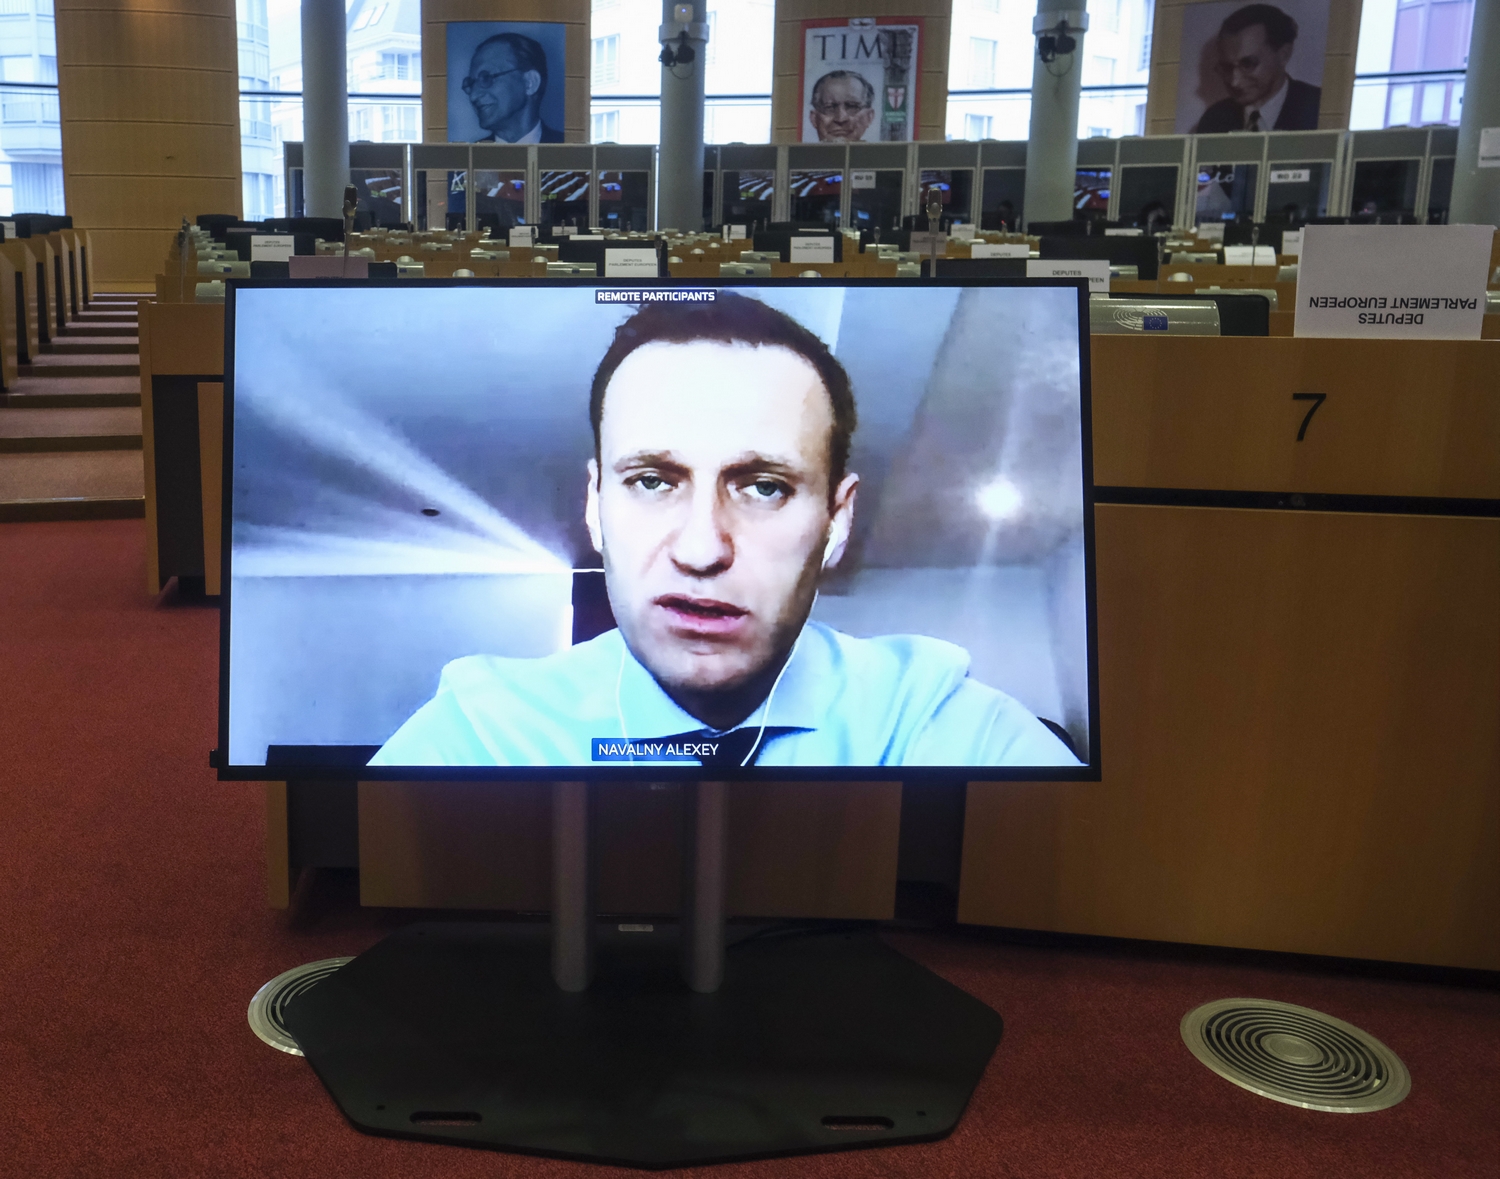 Navalnij álnéven hívta fel az őt megmérgező orosz titkosügynökök egyikét, aki elárulta, hogy az alsónadrágjába rakták az idegmérget